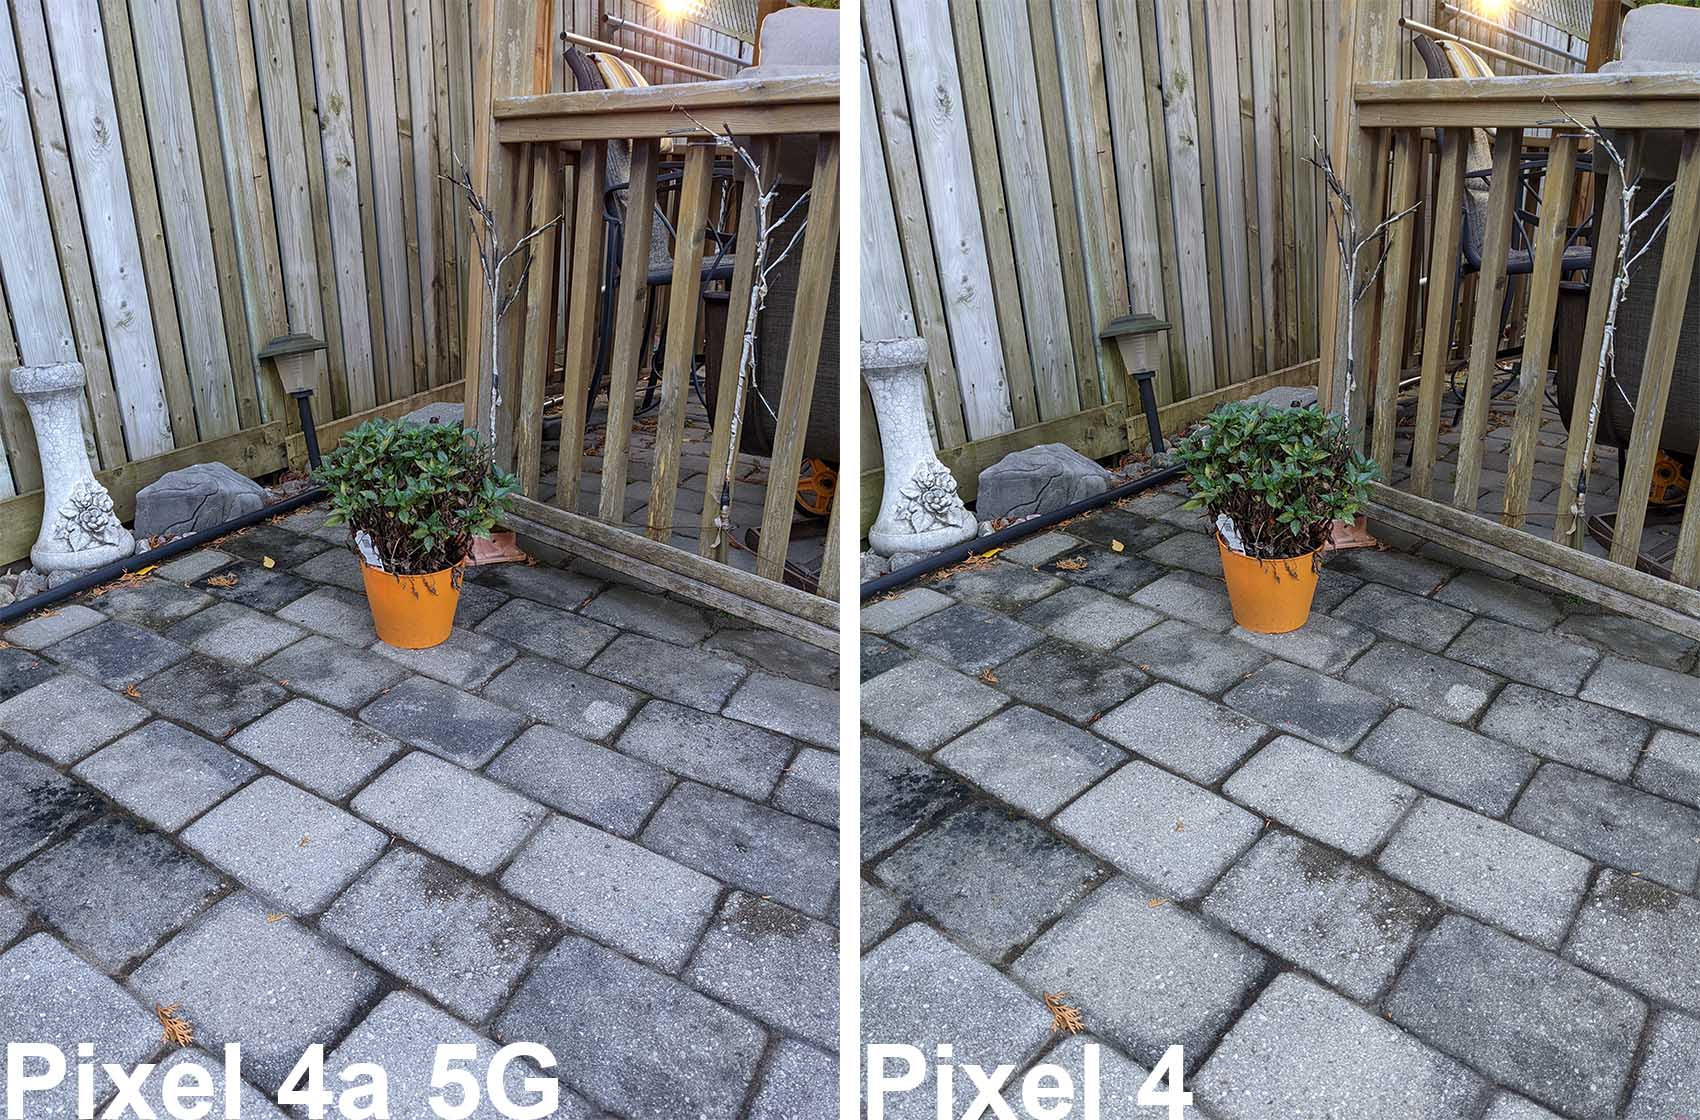 Pixel 4A 5G Pixel 4 Comparison